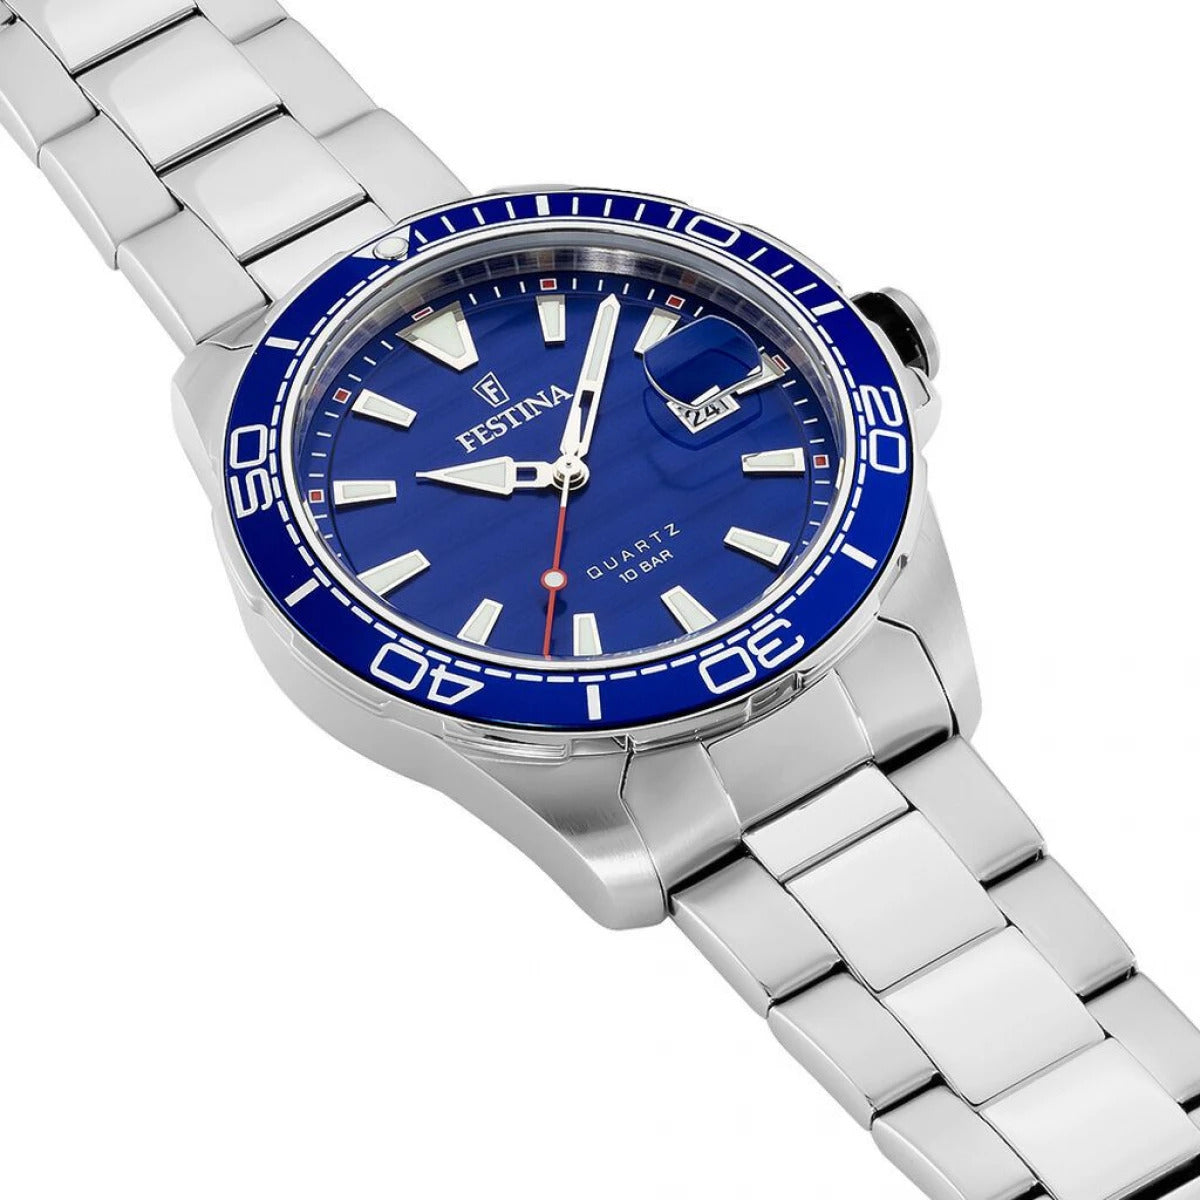 Festina Men's Quartz Blue Dial Watch - F20360/1